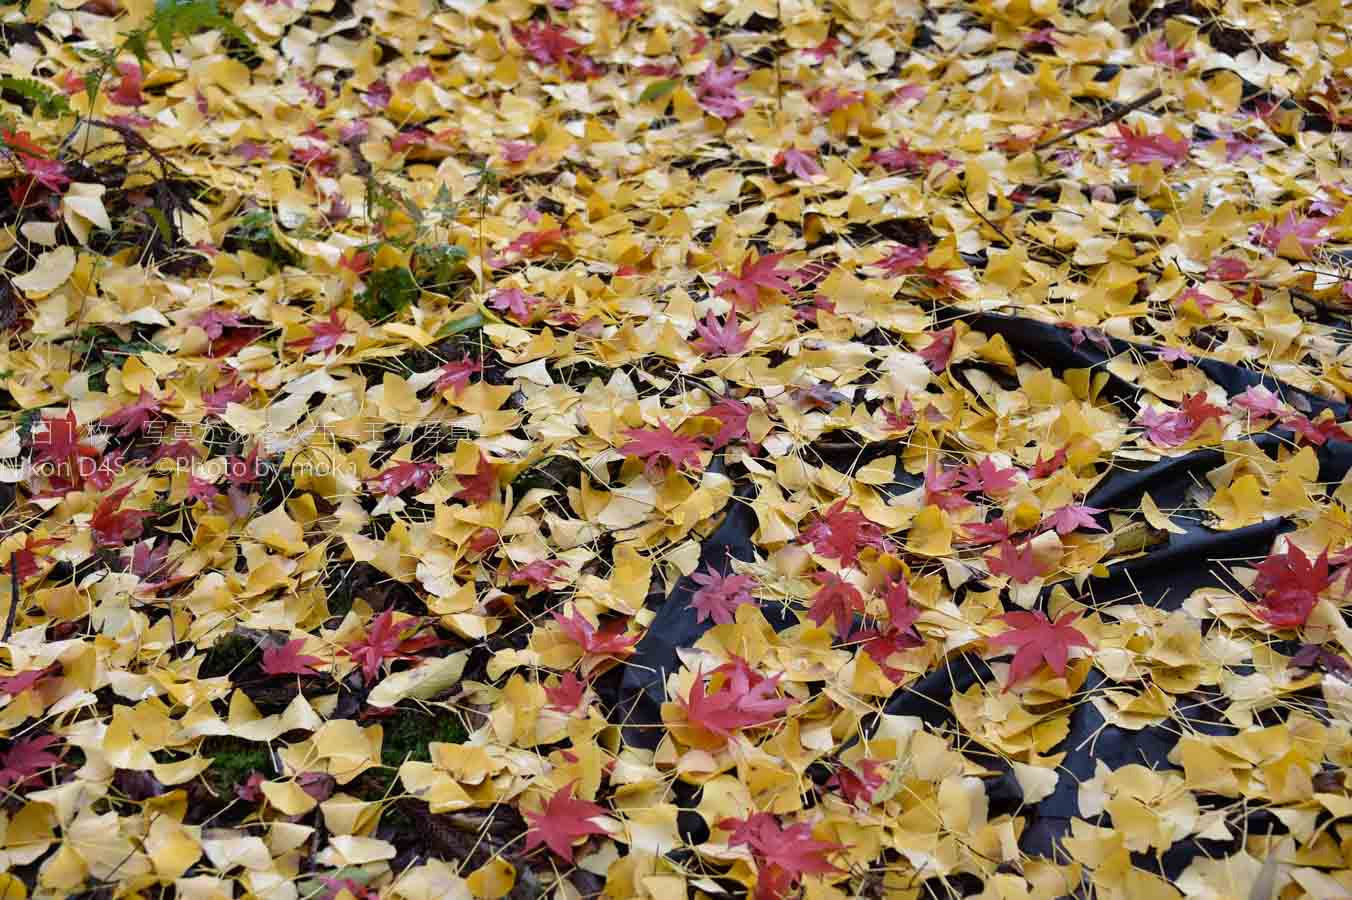 【スナップ撮影】秋の紅葉を堪能しよう